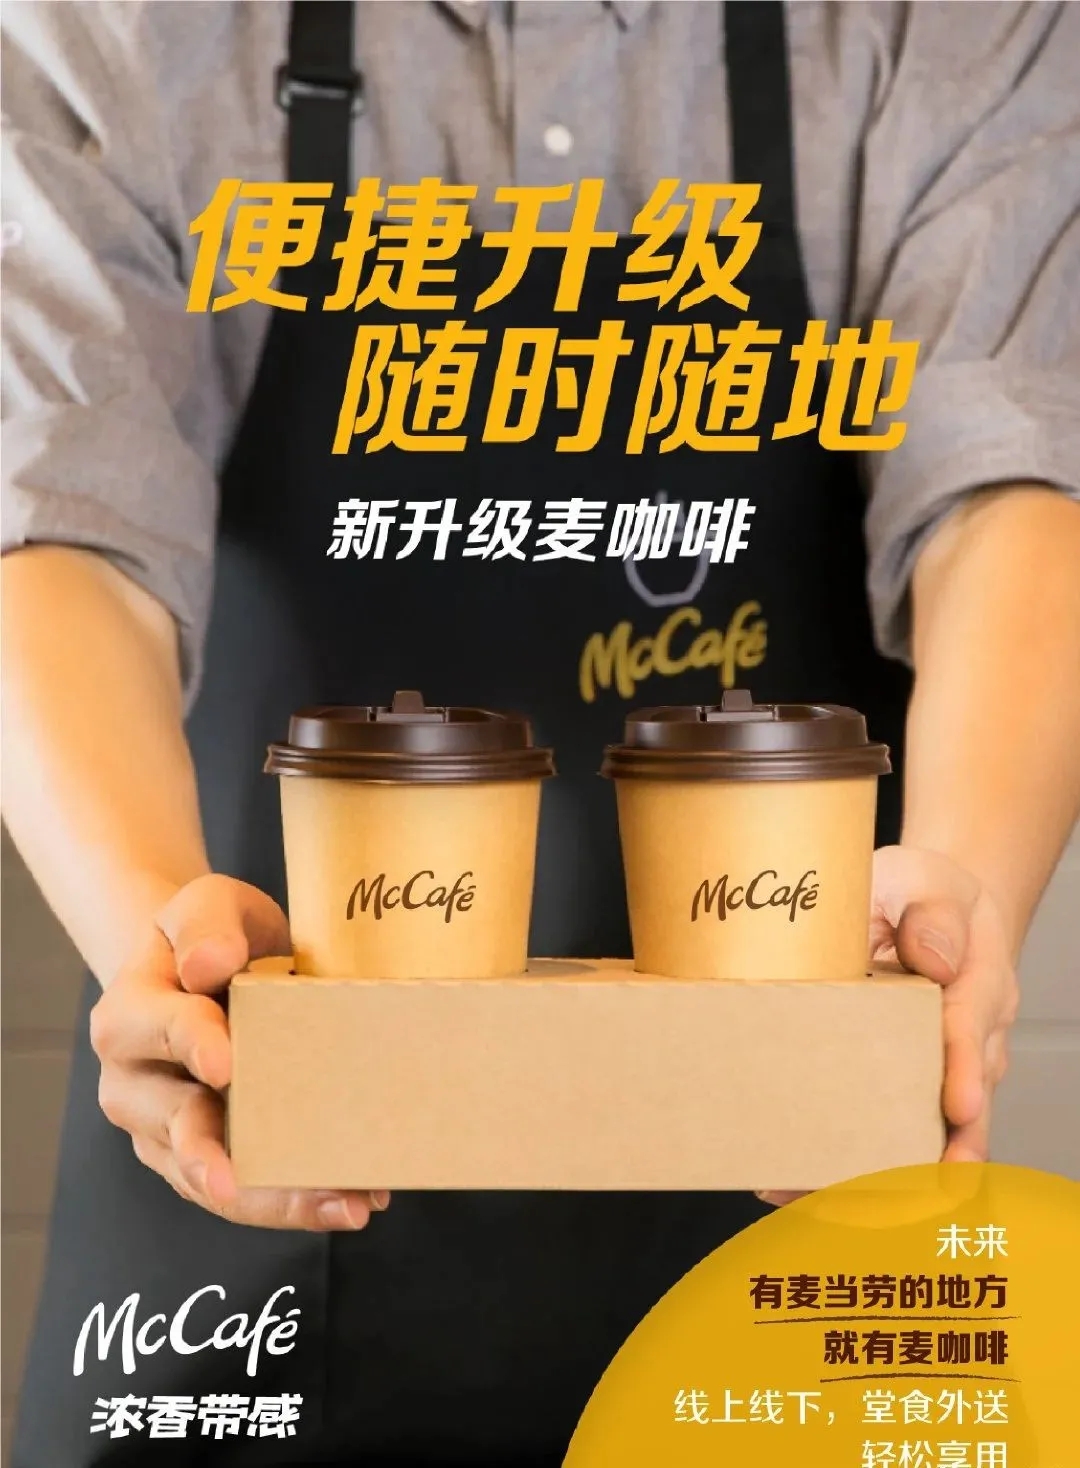 麦当劳旗下品牌麦咖啡品牌形象升级